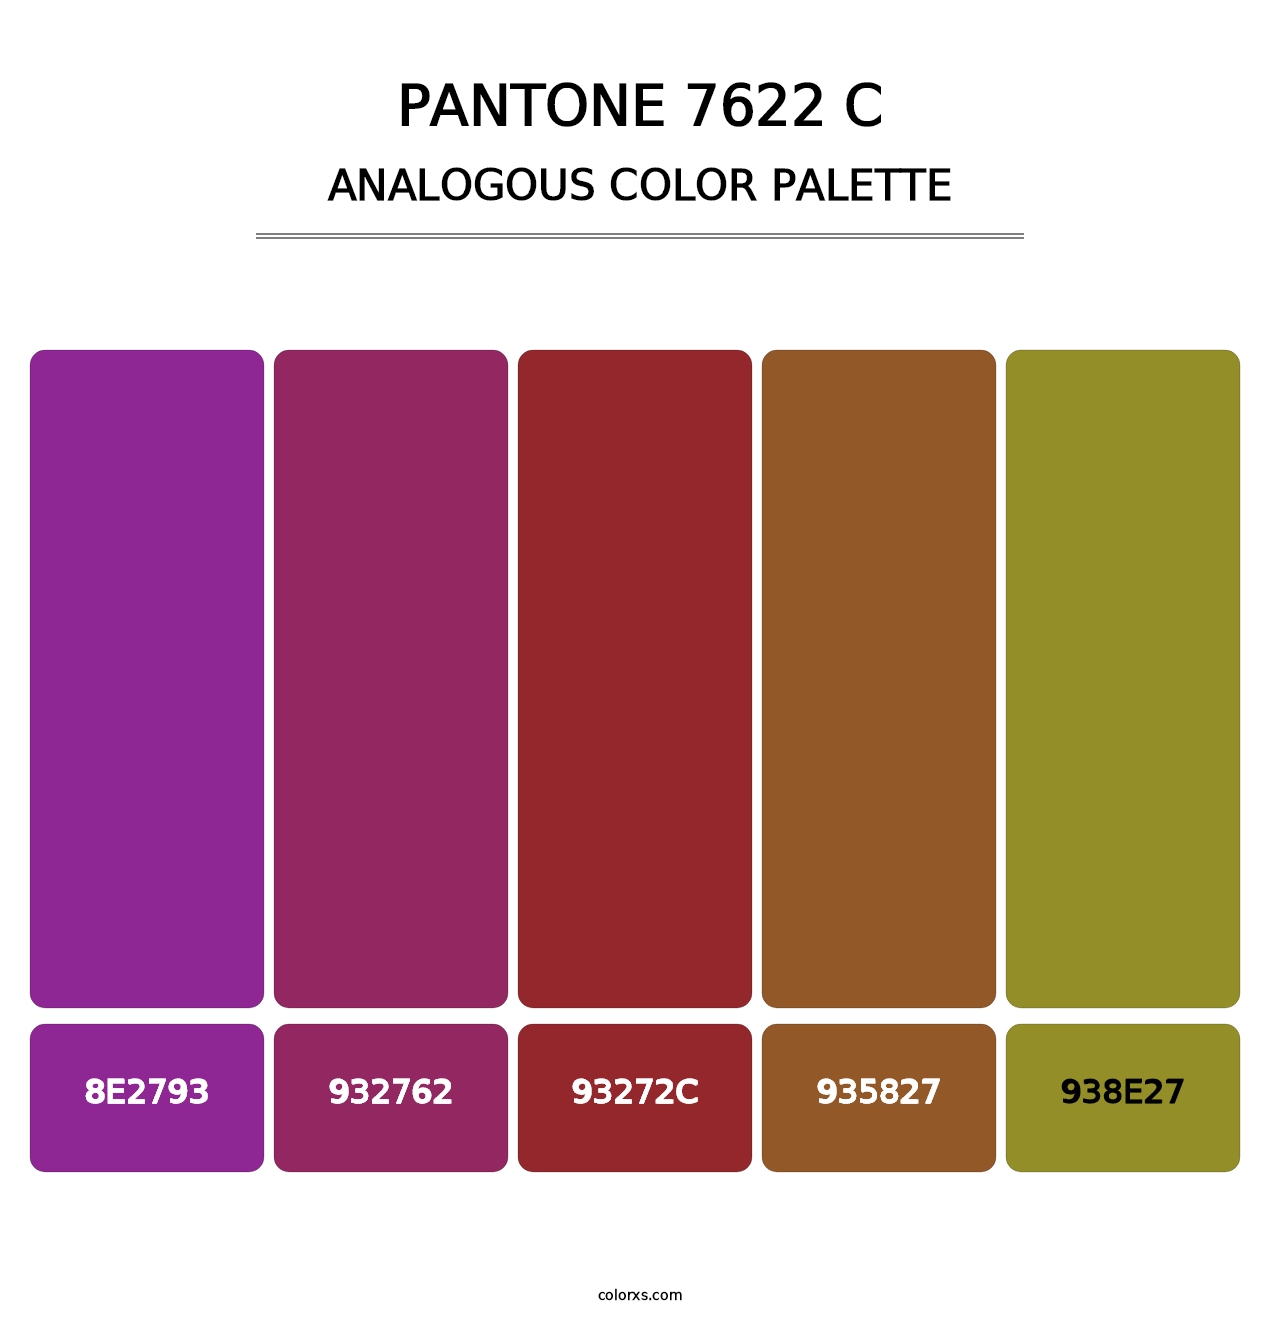 PANTONE 7622 C - Analogous Color Palette